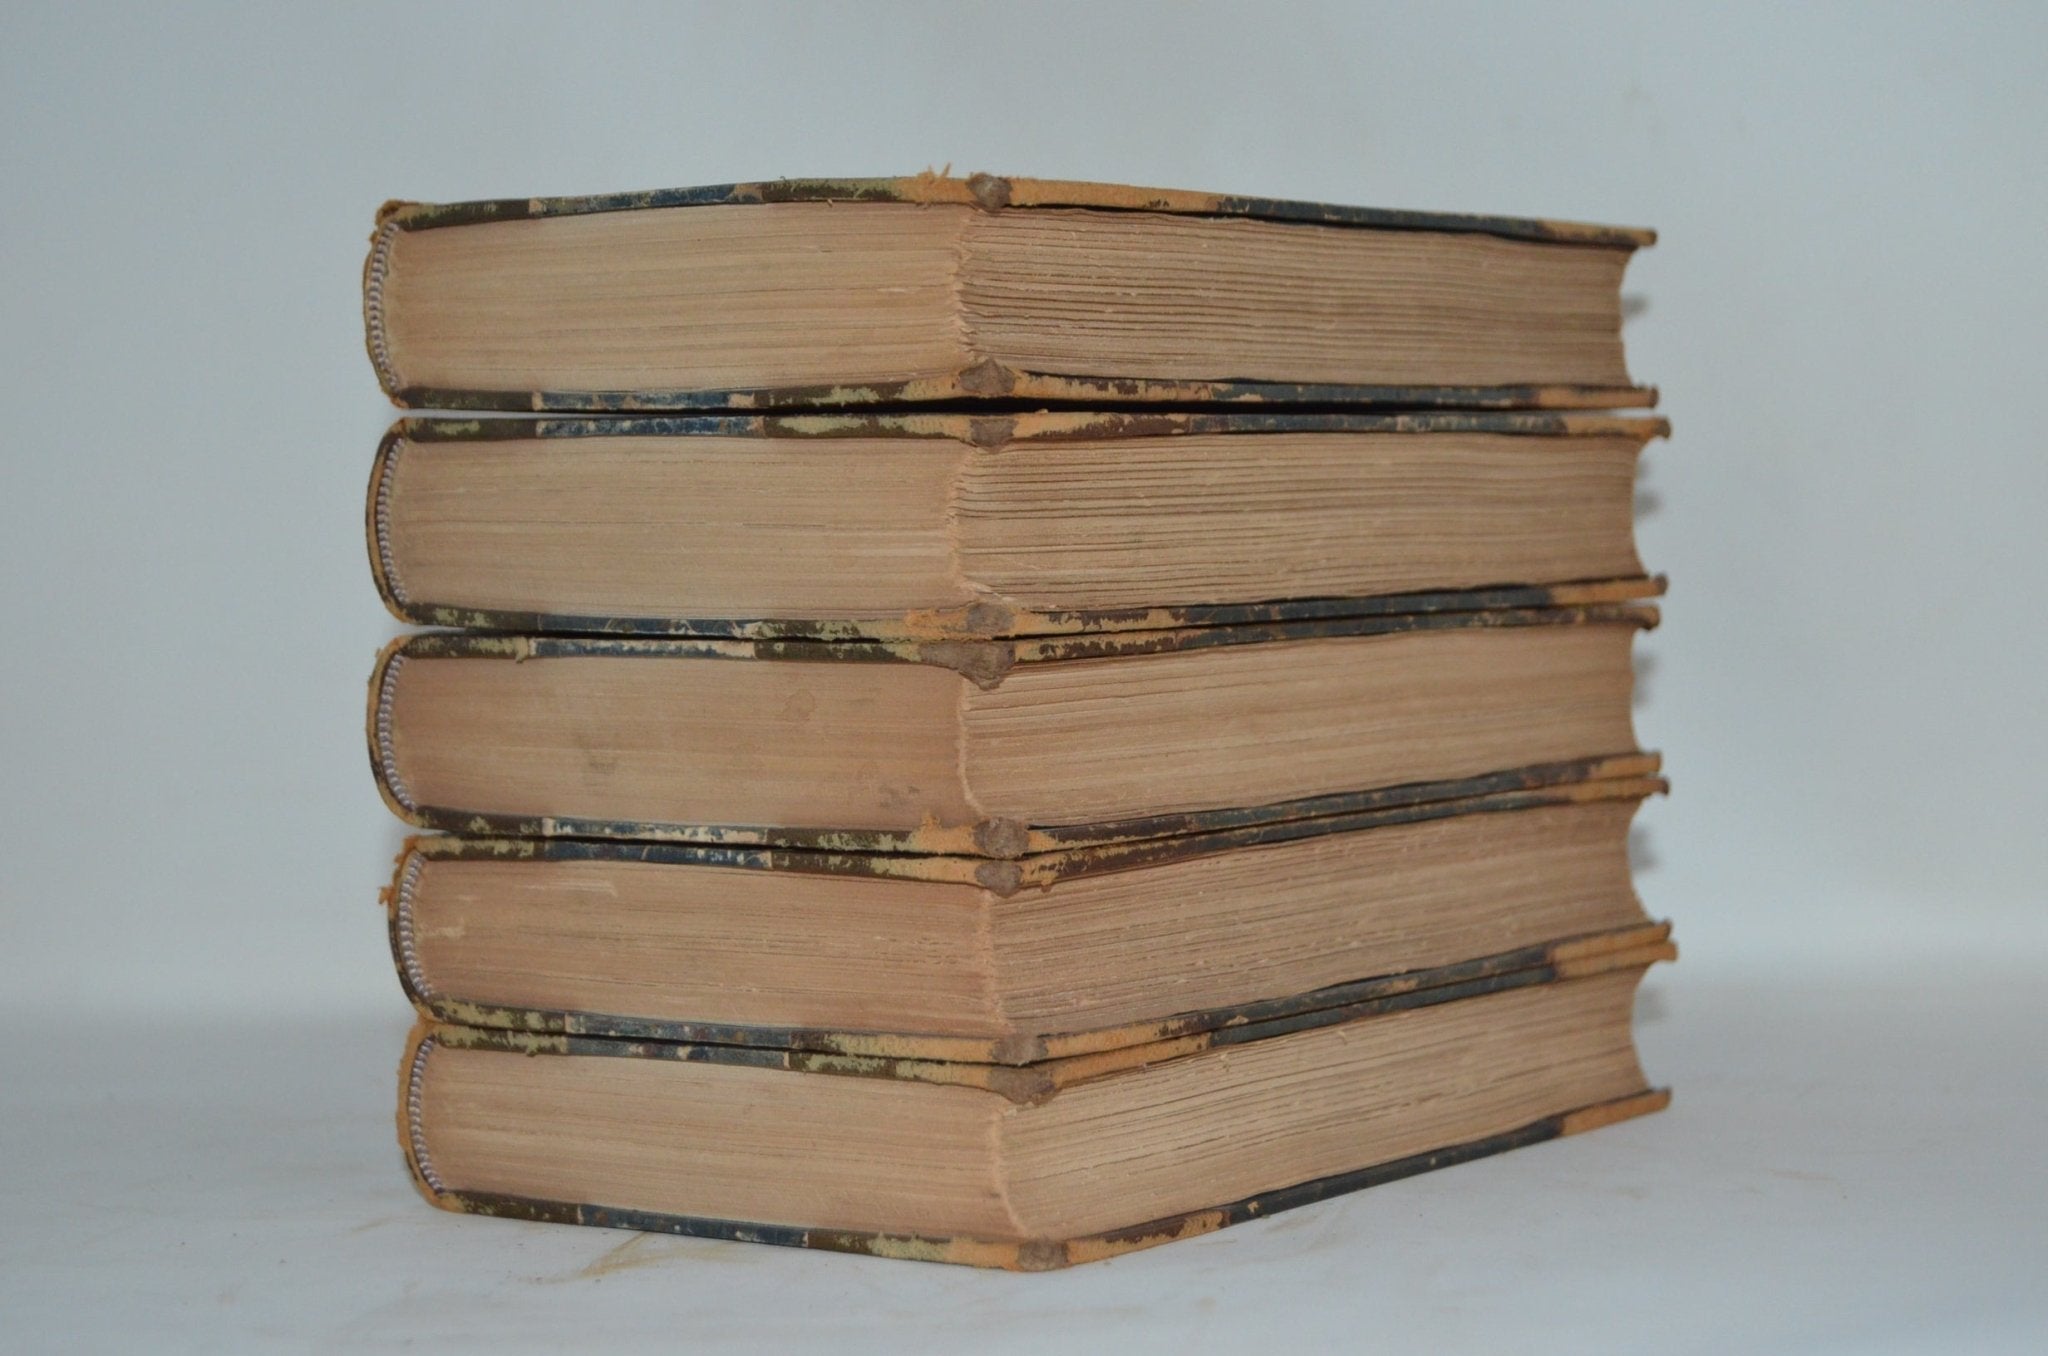 Antique Leather Bound Book Décor – 6” Dark Brown - George Elliot - Brookfield Books